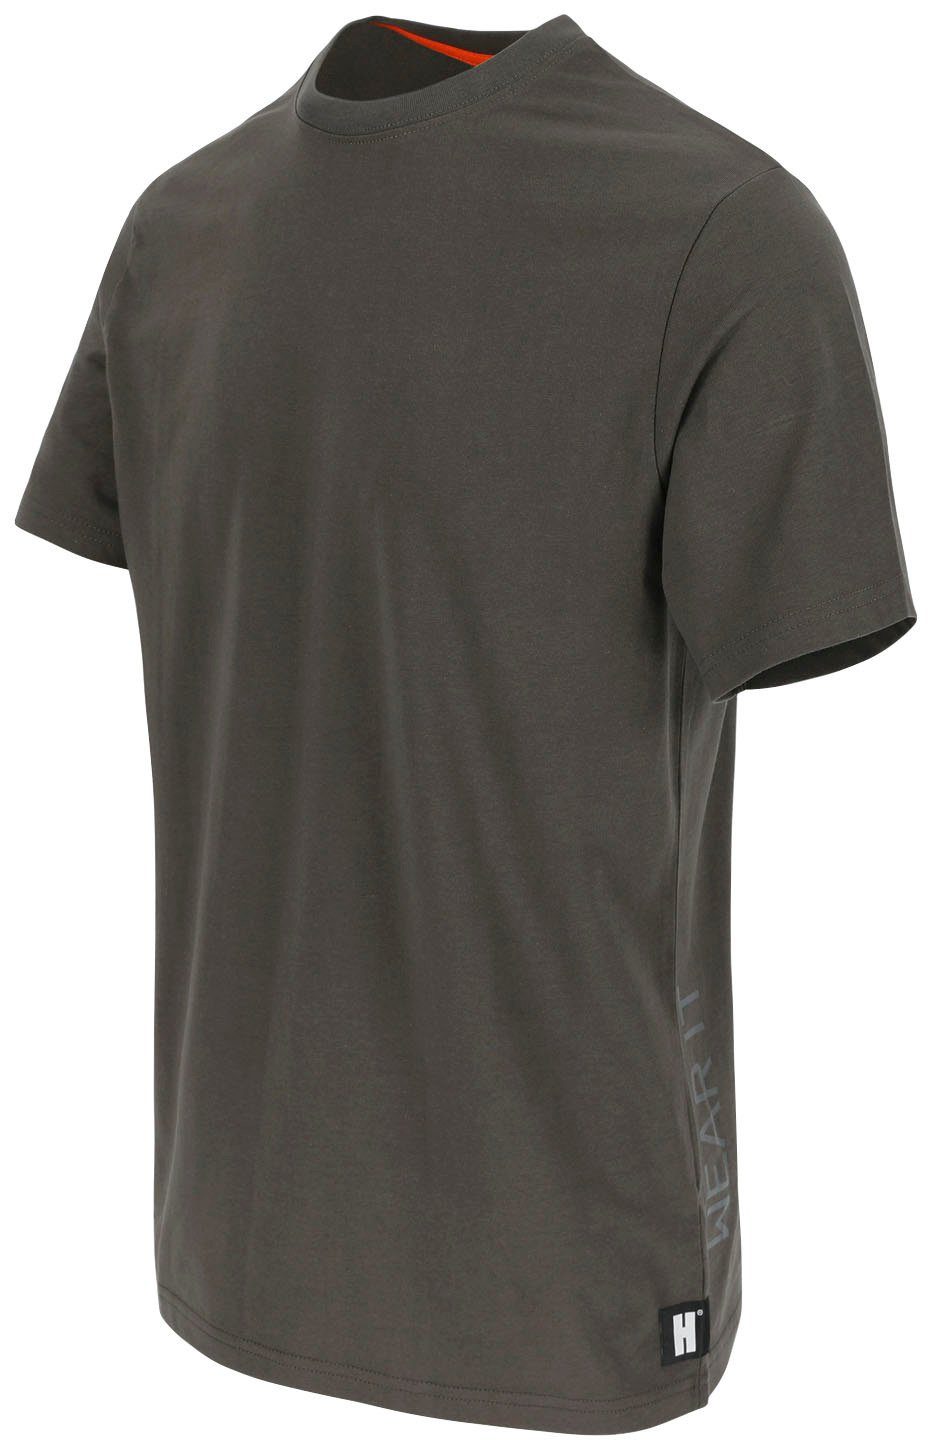 Herock Callius T-Shirt kurze Rundhalsausschnitt, kurze Herock®-Aufdruck, T-Shirt Ärmel, Rippstrickkragen grau Ärmel